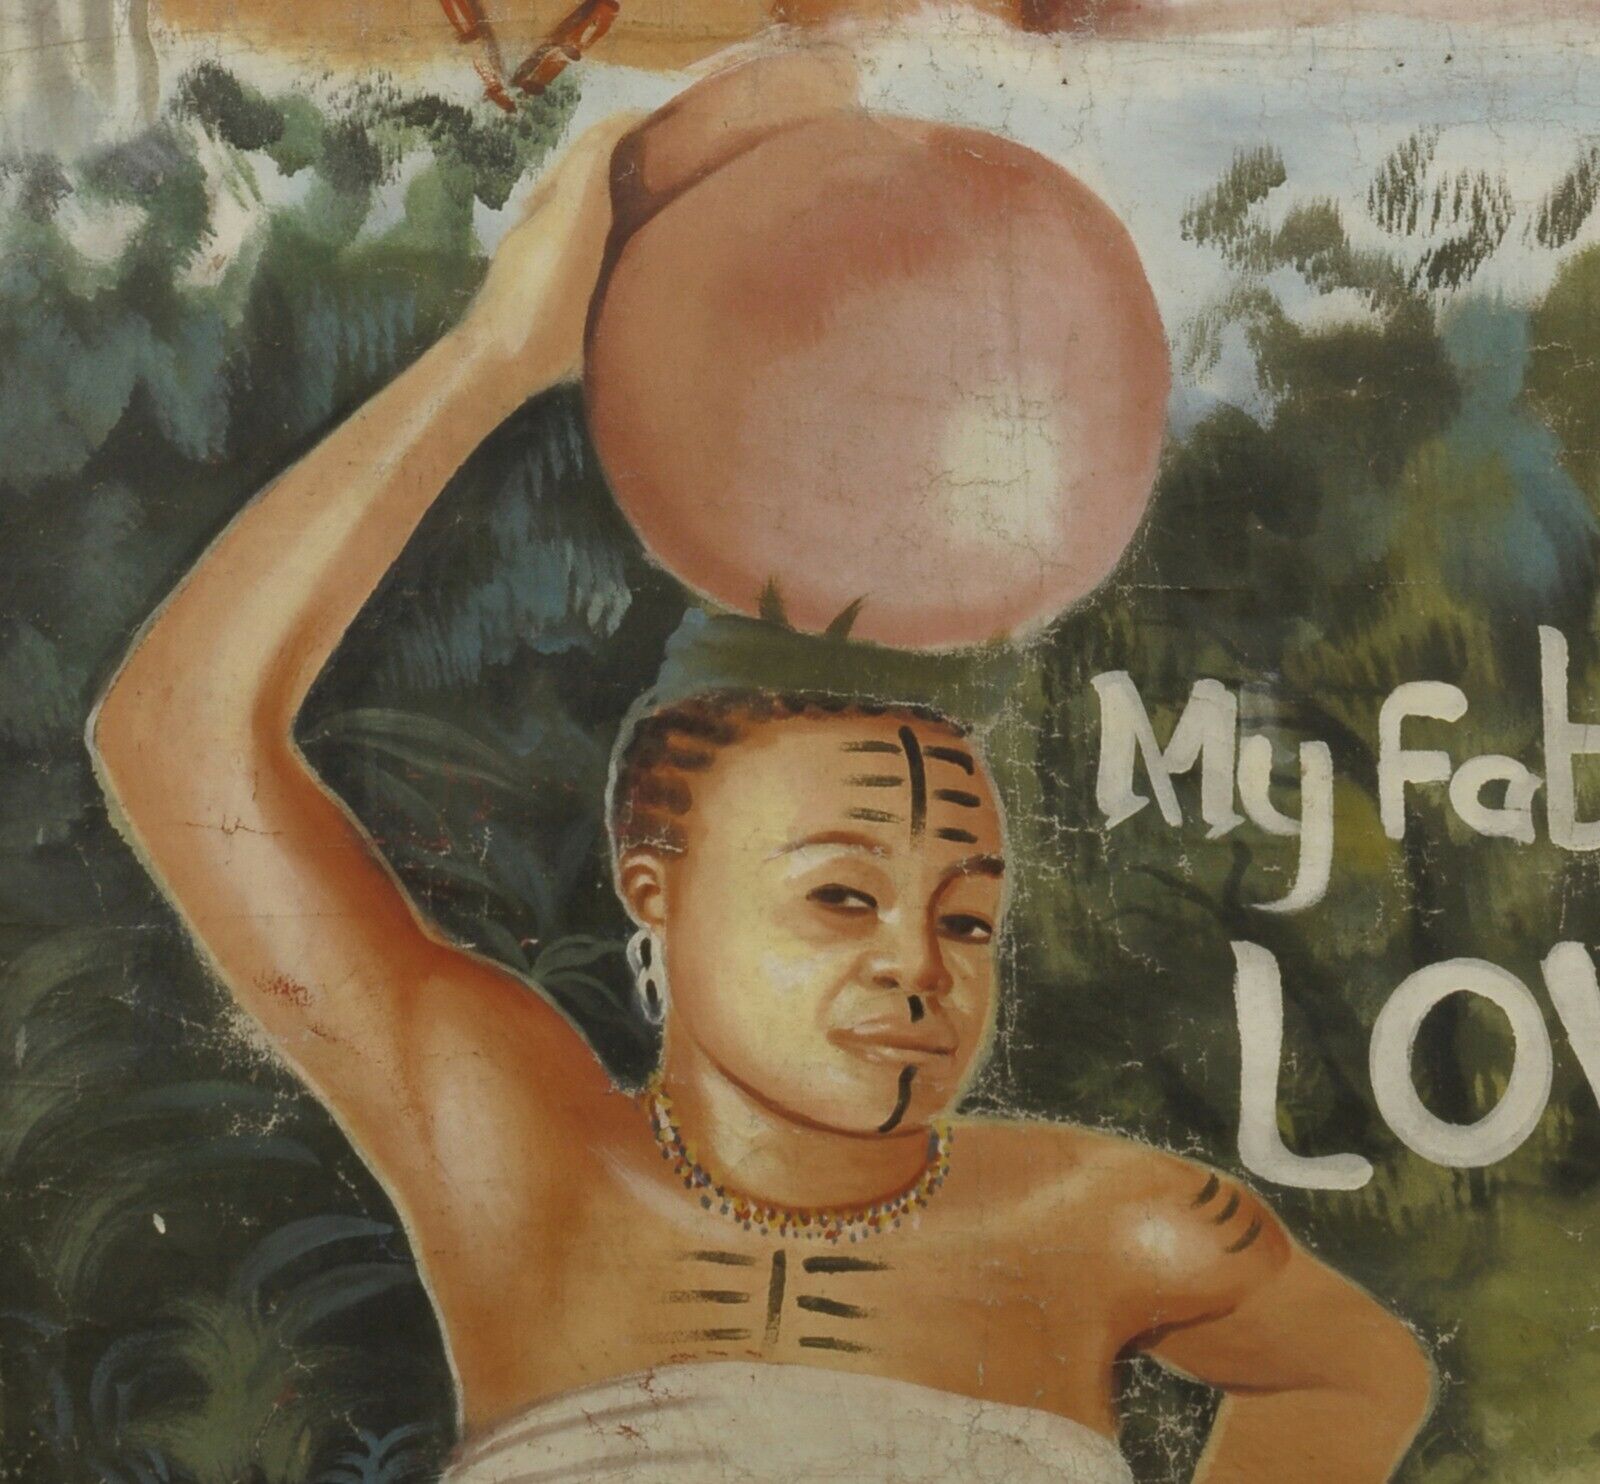 Αφίσα ταινίας της Γκάνα Αφρικανικός κινηματογράφος μπογιά χειρός ανακυκλωμένος σάκος αλευριού My Fathers Love - Tribalgh